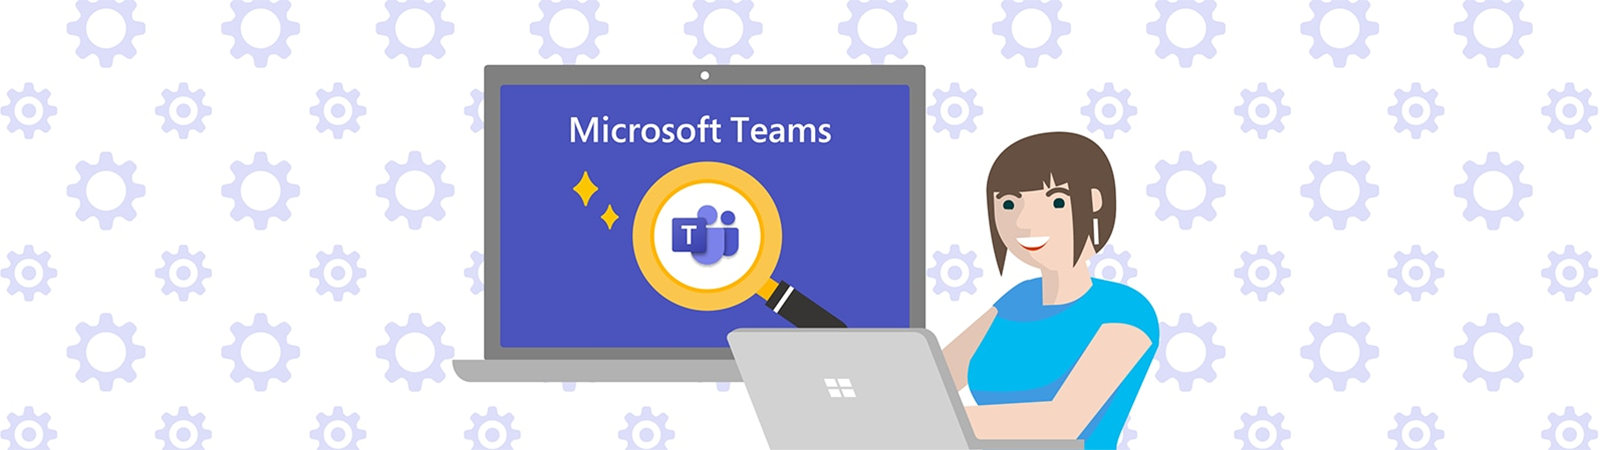 ノート PC を操作する人物と Microsoft Teams 検索していることを表すイラスト